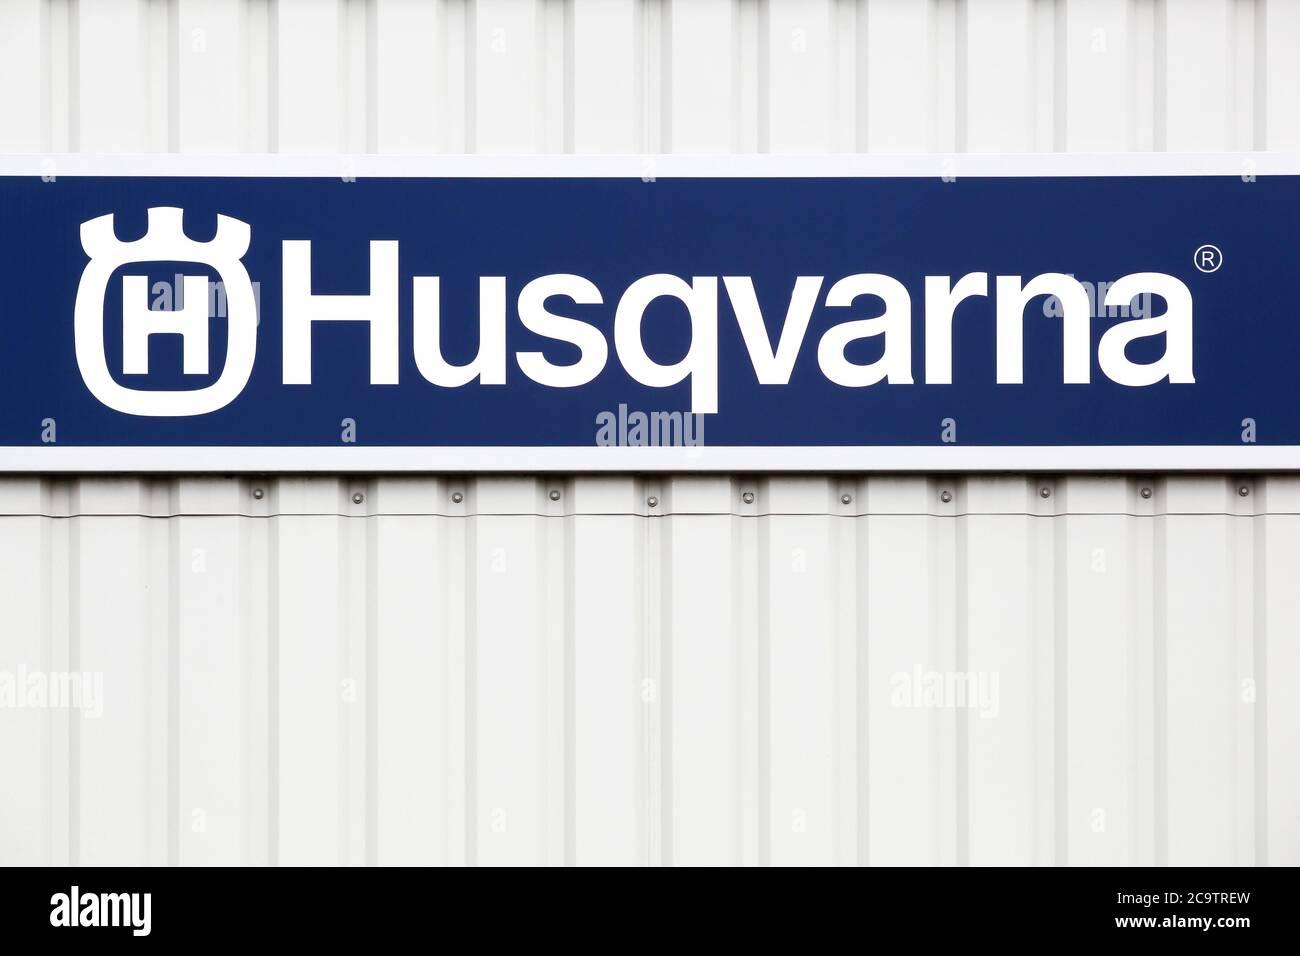 Hornslet, Danemark - 25 juillet 2020 : logo Husqvarna sur une façade. Husqvarna est un fabricant suédois de robots de tonte, de tracteurs de jardin et de tronçonneuses Banque D'Images